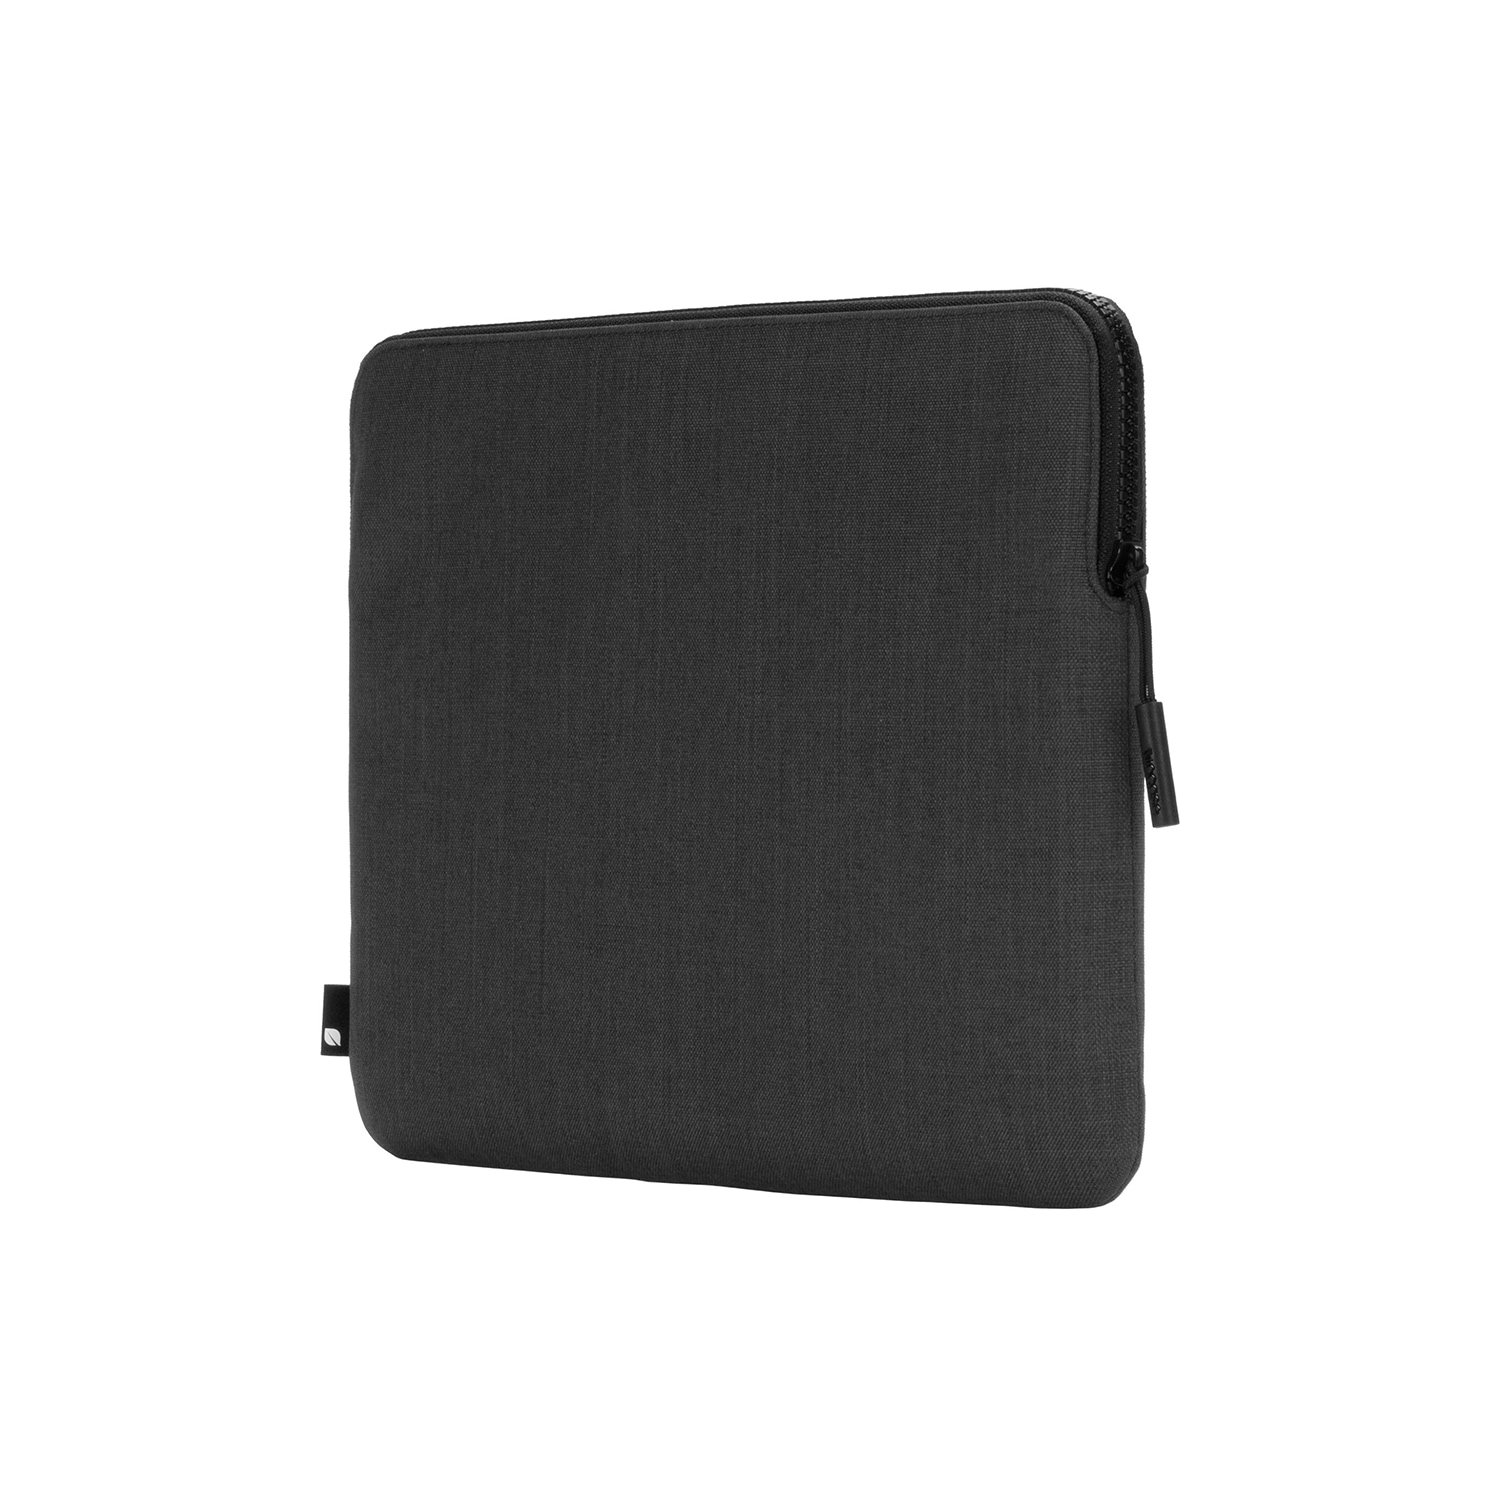 Laptoptasche »Slim Sleeve mit Woolenex für MacBook«